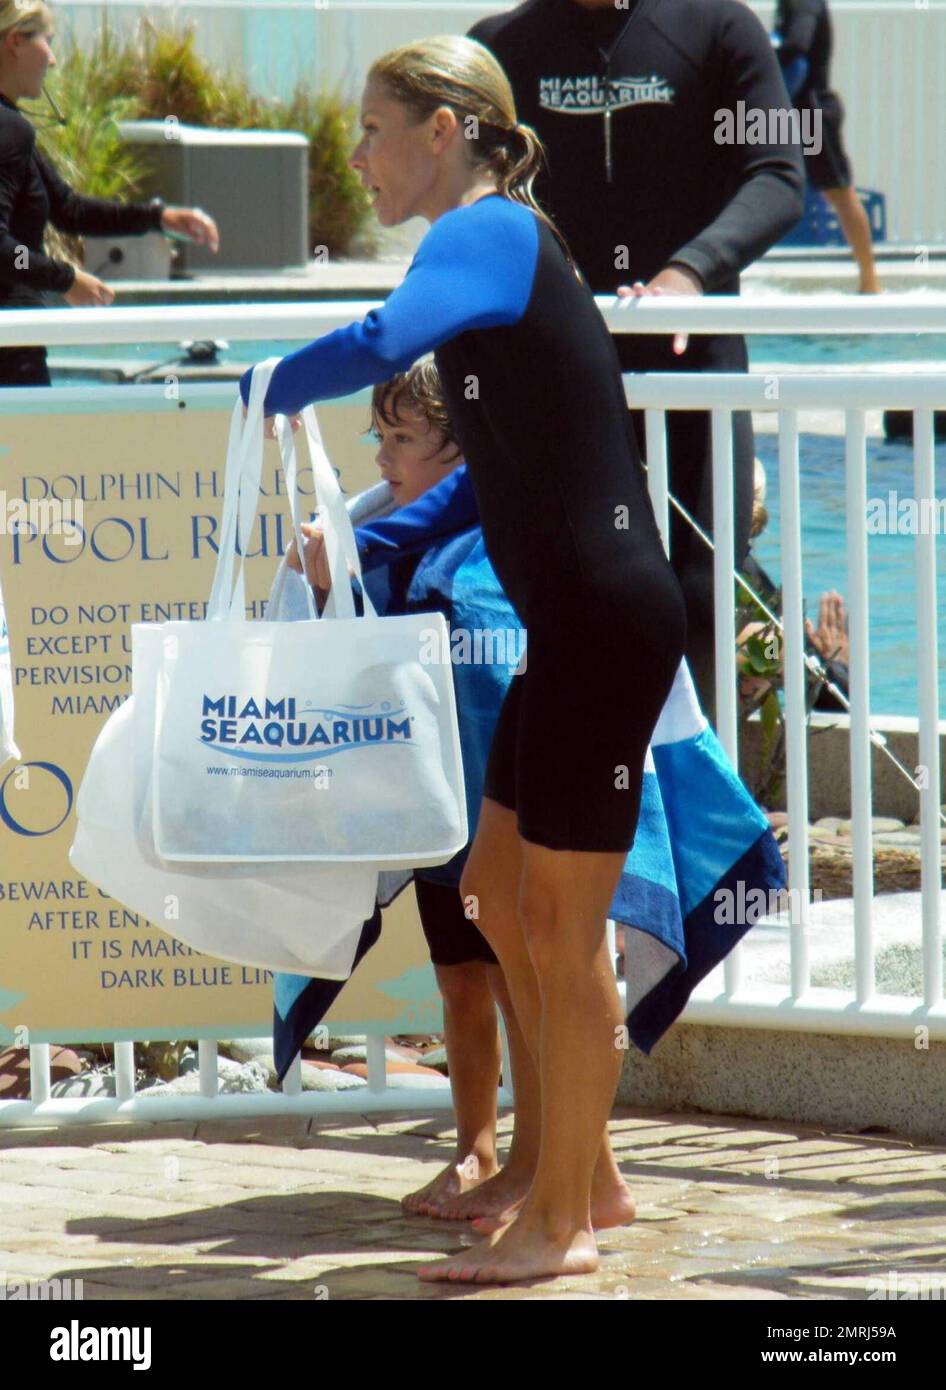 Exclusivo! Kelly Ripa, presentadora del programa de televisión  ESTADOUNIDENSE, pasa una mañana en el Miami Seaquarium con su familia. Ripa  se puso un traje de neopreno y filmó un segmento del espectáculo